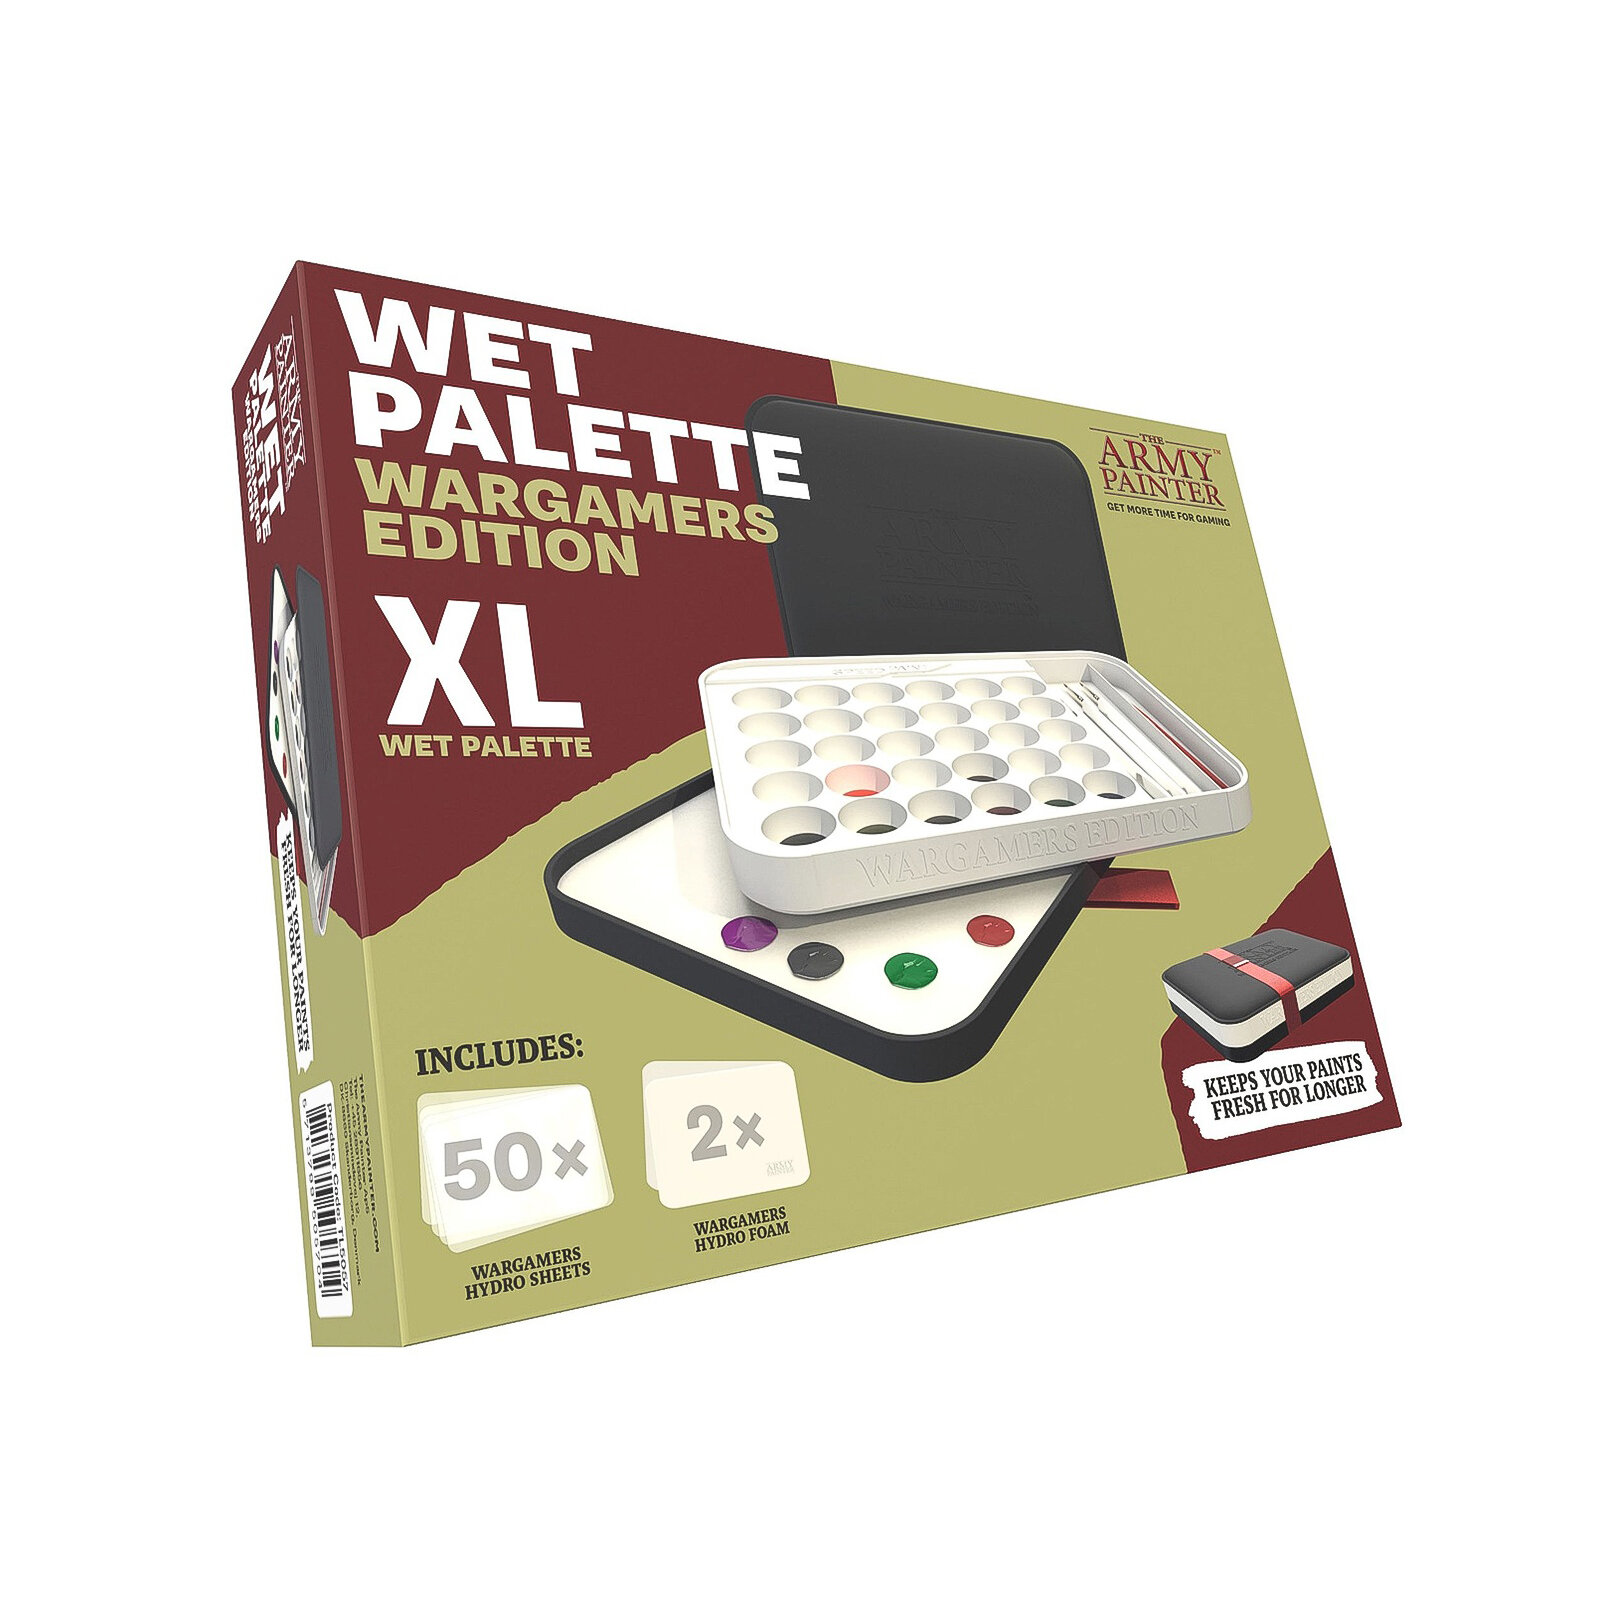 Влажная палитра для моделирования Army Painter Wargamers Edition Wet Palette